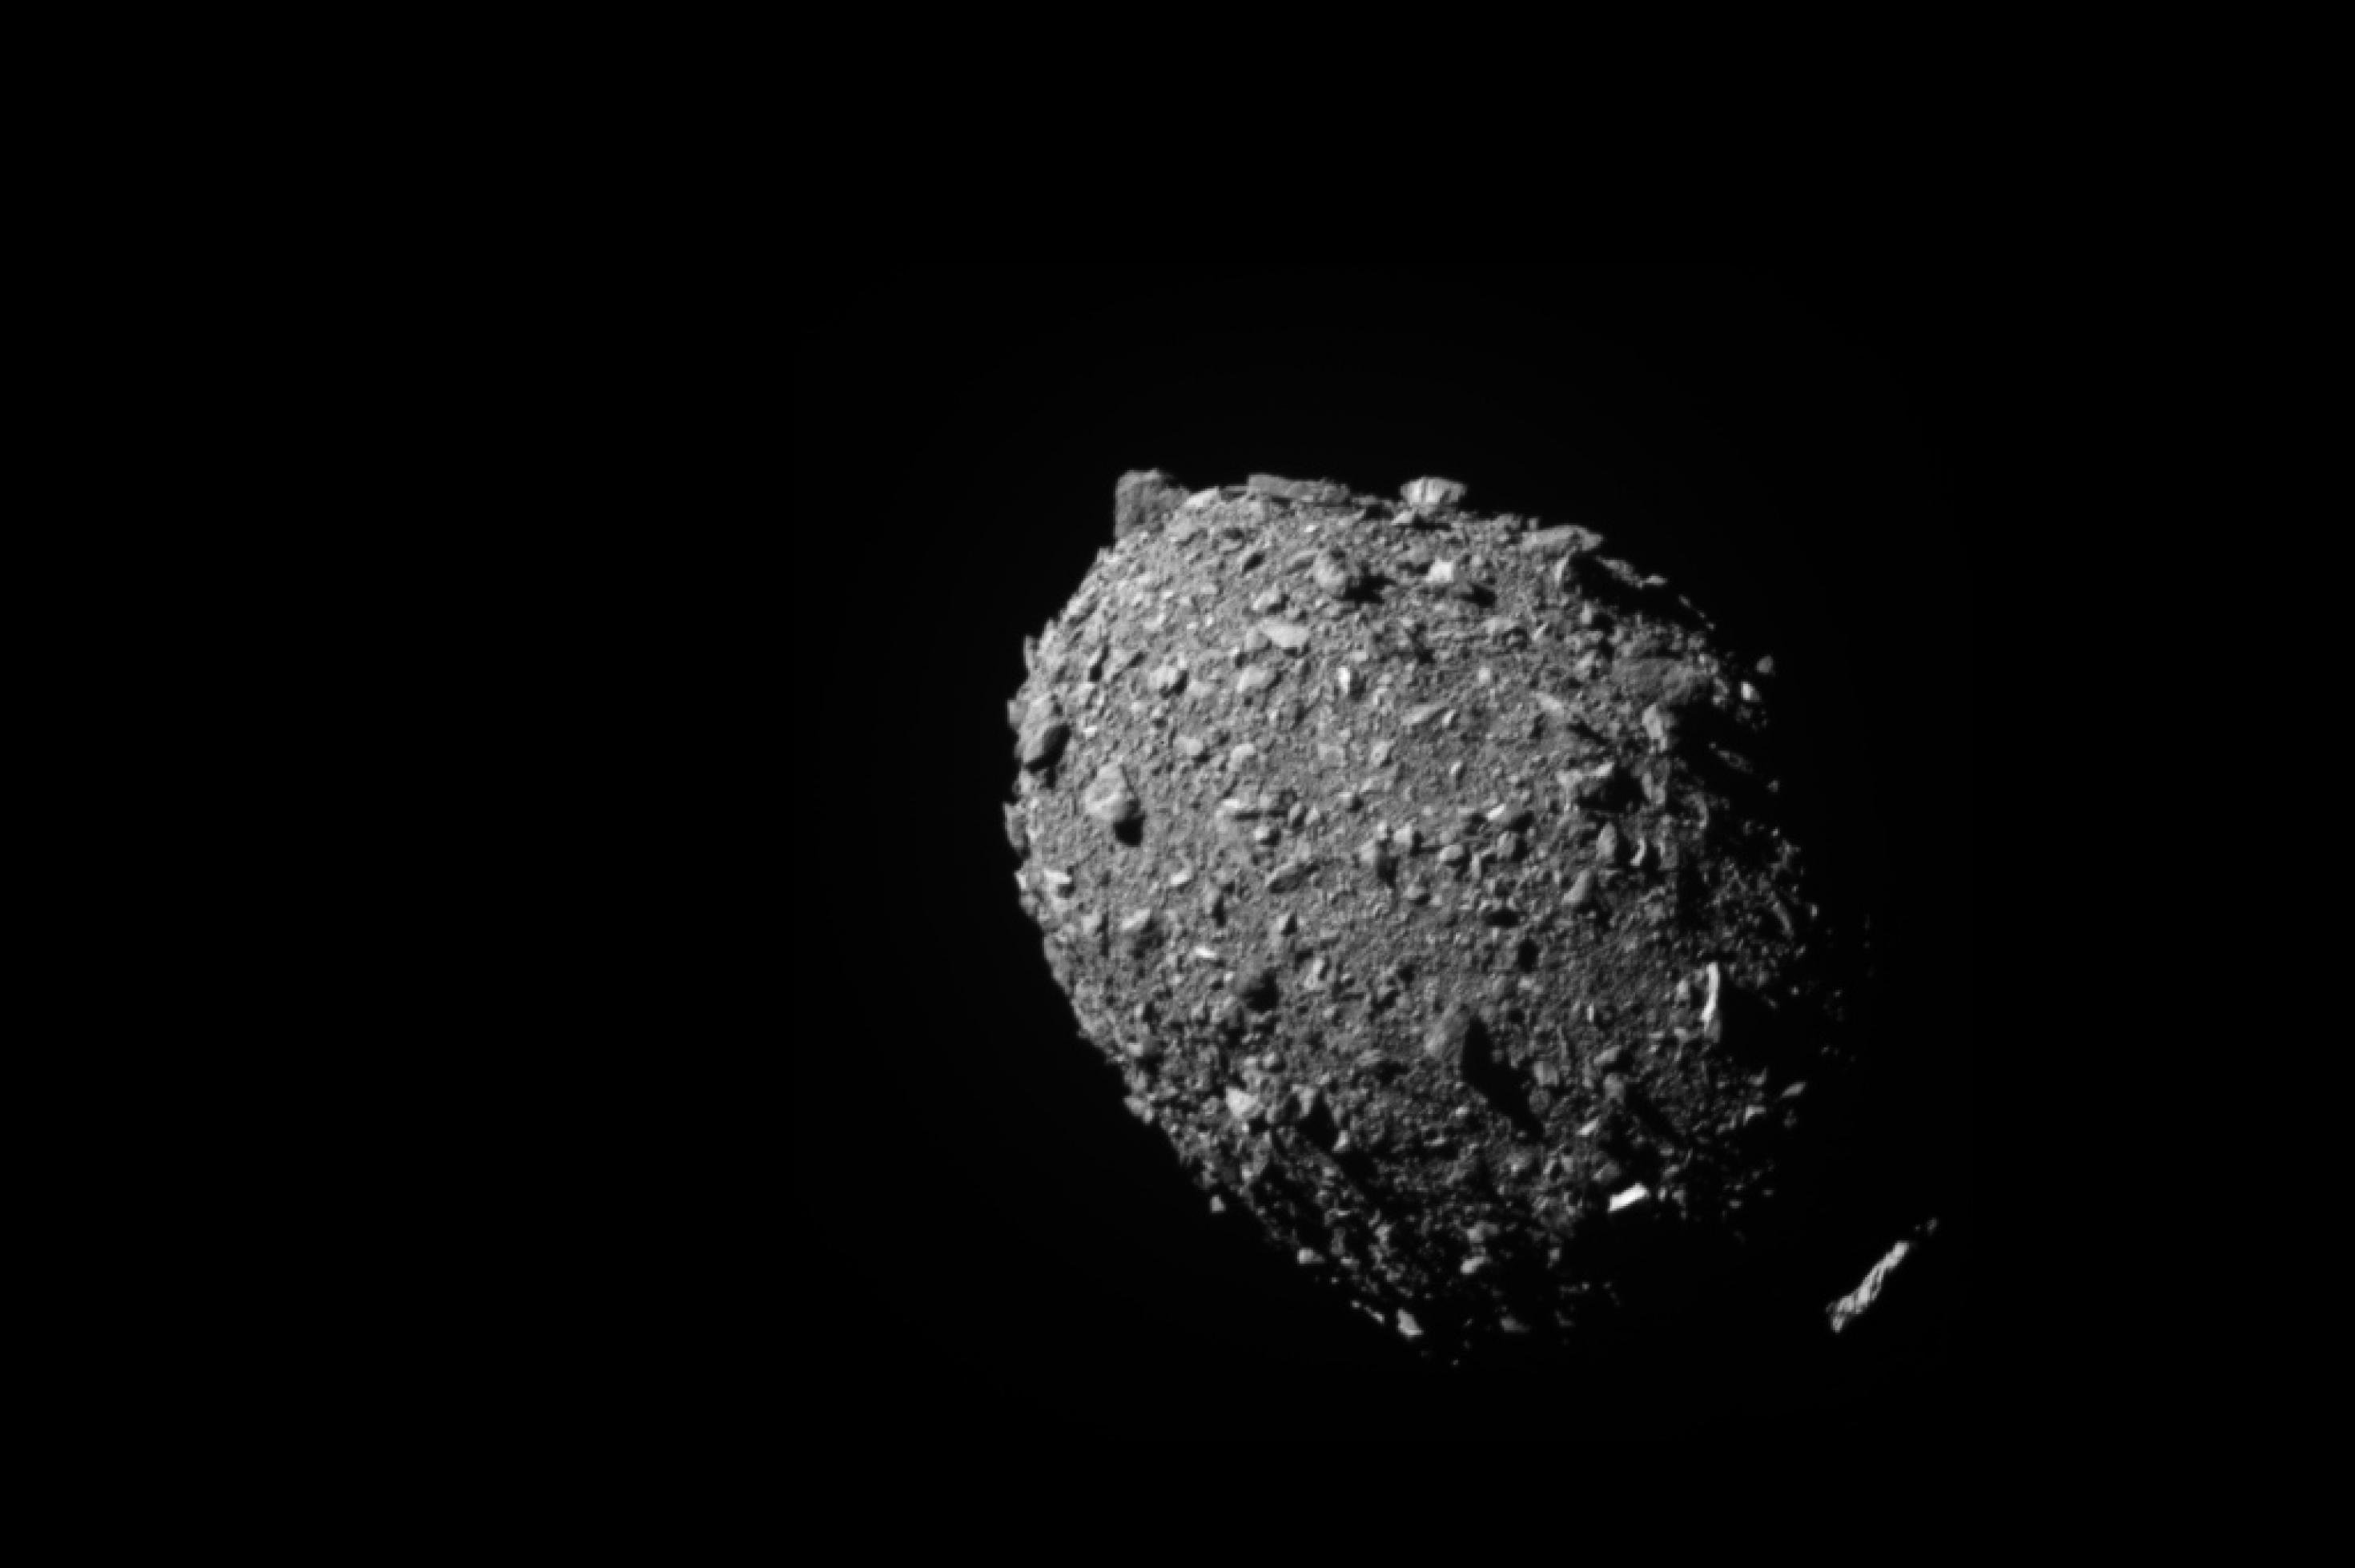 Ein eiförmiger grauer Asteroid, der von großen Brocken übersät ist und so sehr pockennarbig wirkt.